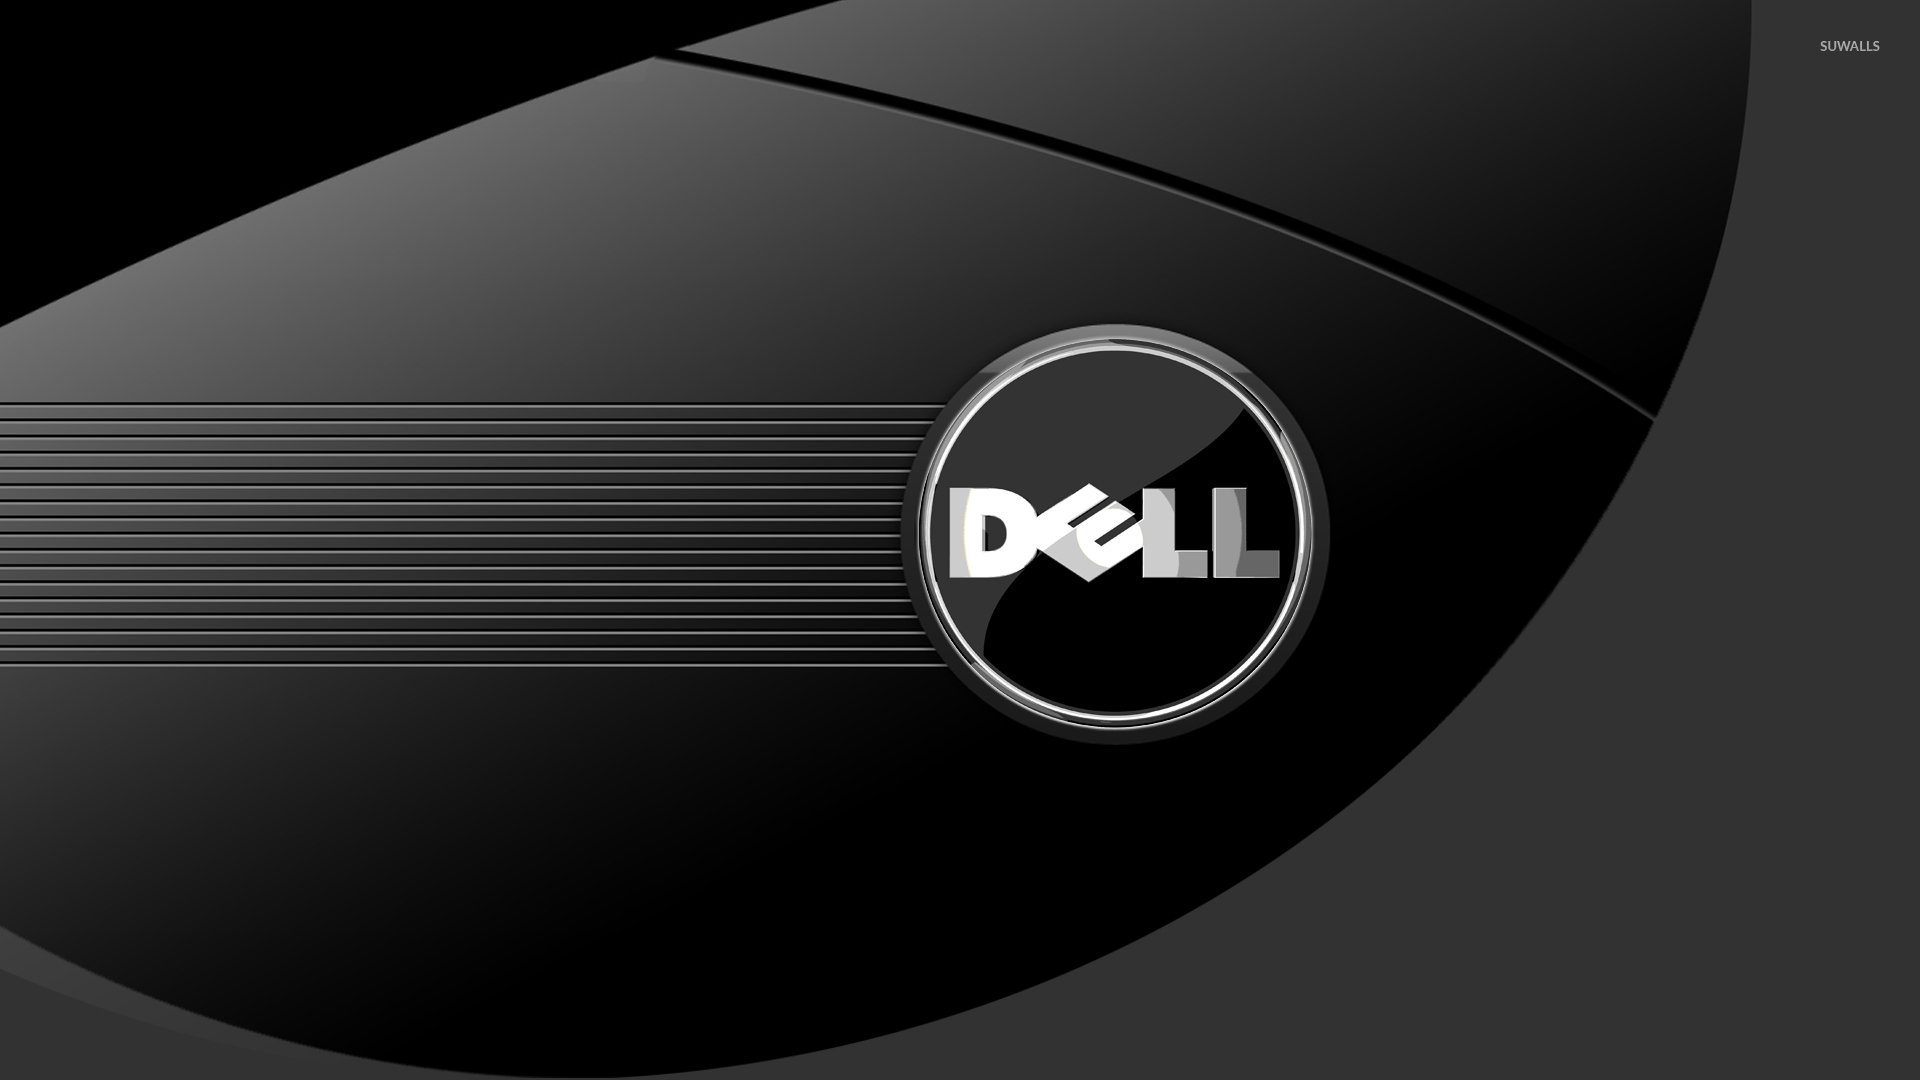 Dell 1366x768 có một nét đặc biệt riêng, với độ phân giải lớn bạn sẽ có những hình ảnh rất sắc nét và rõ ràng. Một loạt những hình nền đặc sắc, giúp màn hình Dell trở nên sống động hơn bao giờ hết. Tạo ra một không gian sống tuyệt đẹp cho chiếc laptop yêu quý của bạn.